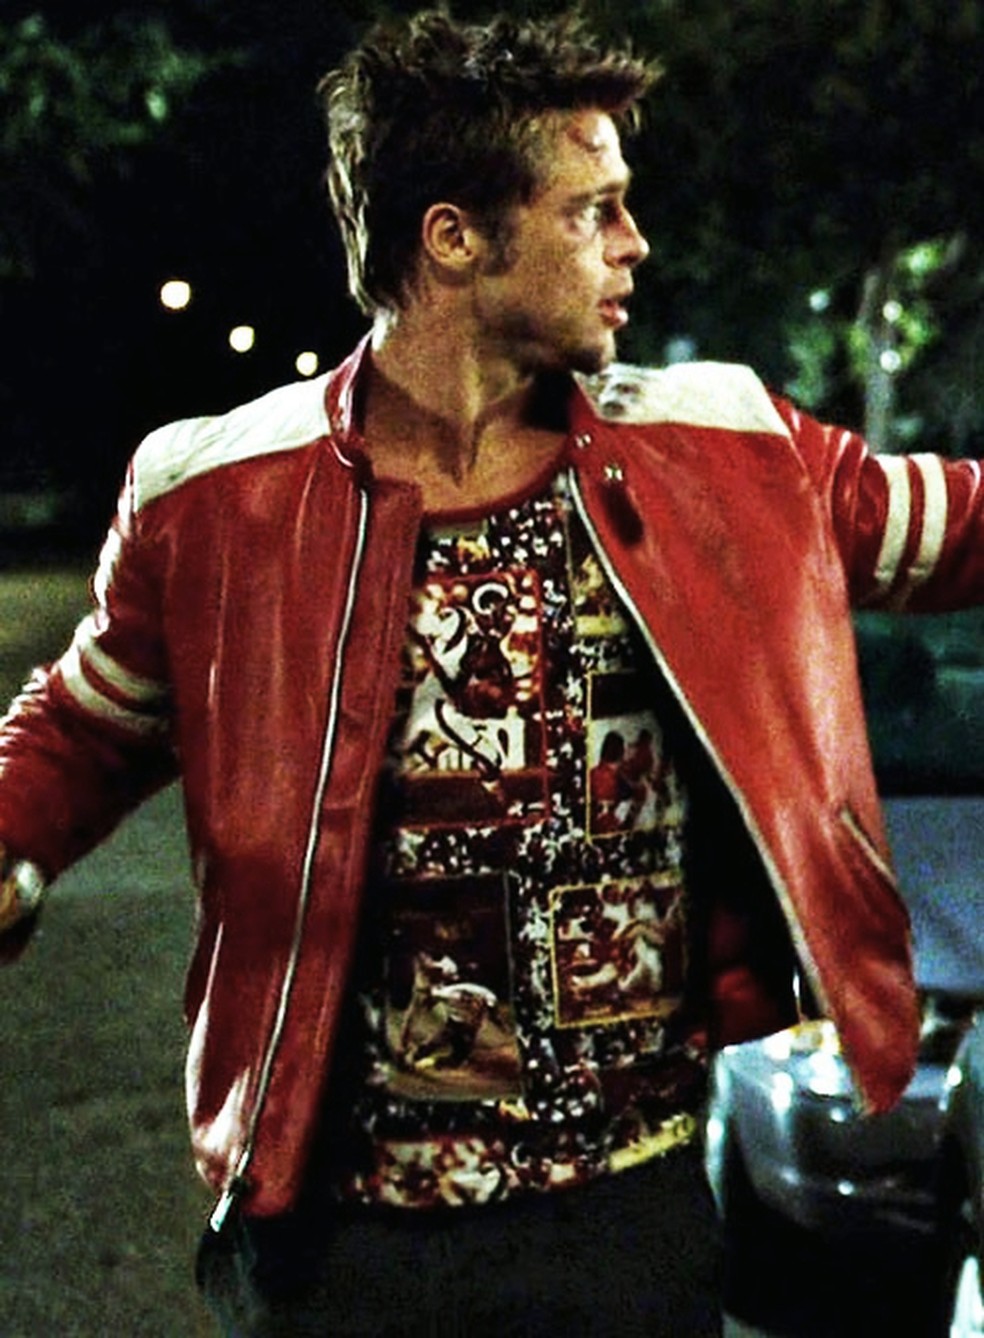 Jaqueta usada por Brad Pitt em 'Clube da Luta' — Foto: Reprodução